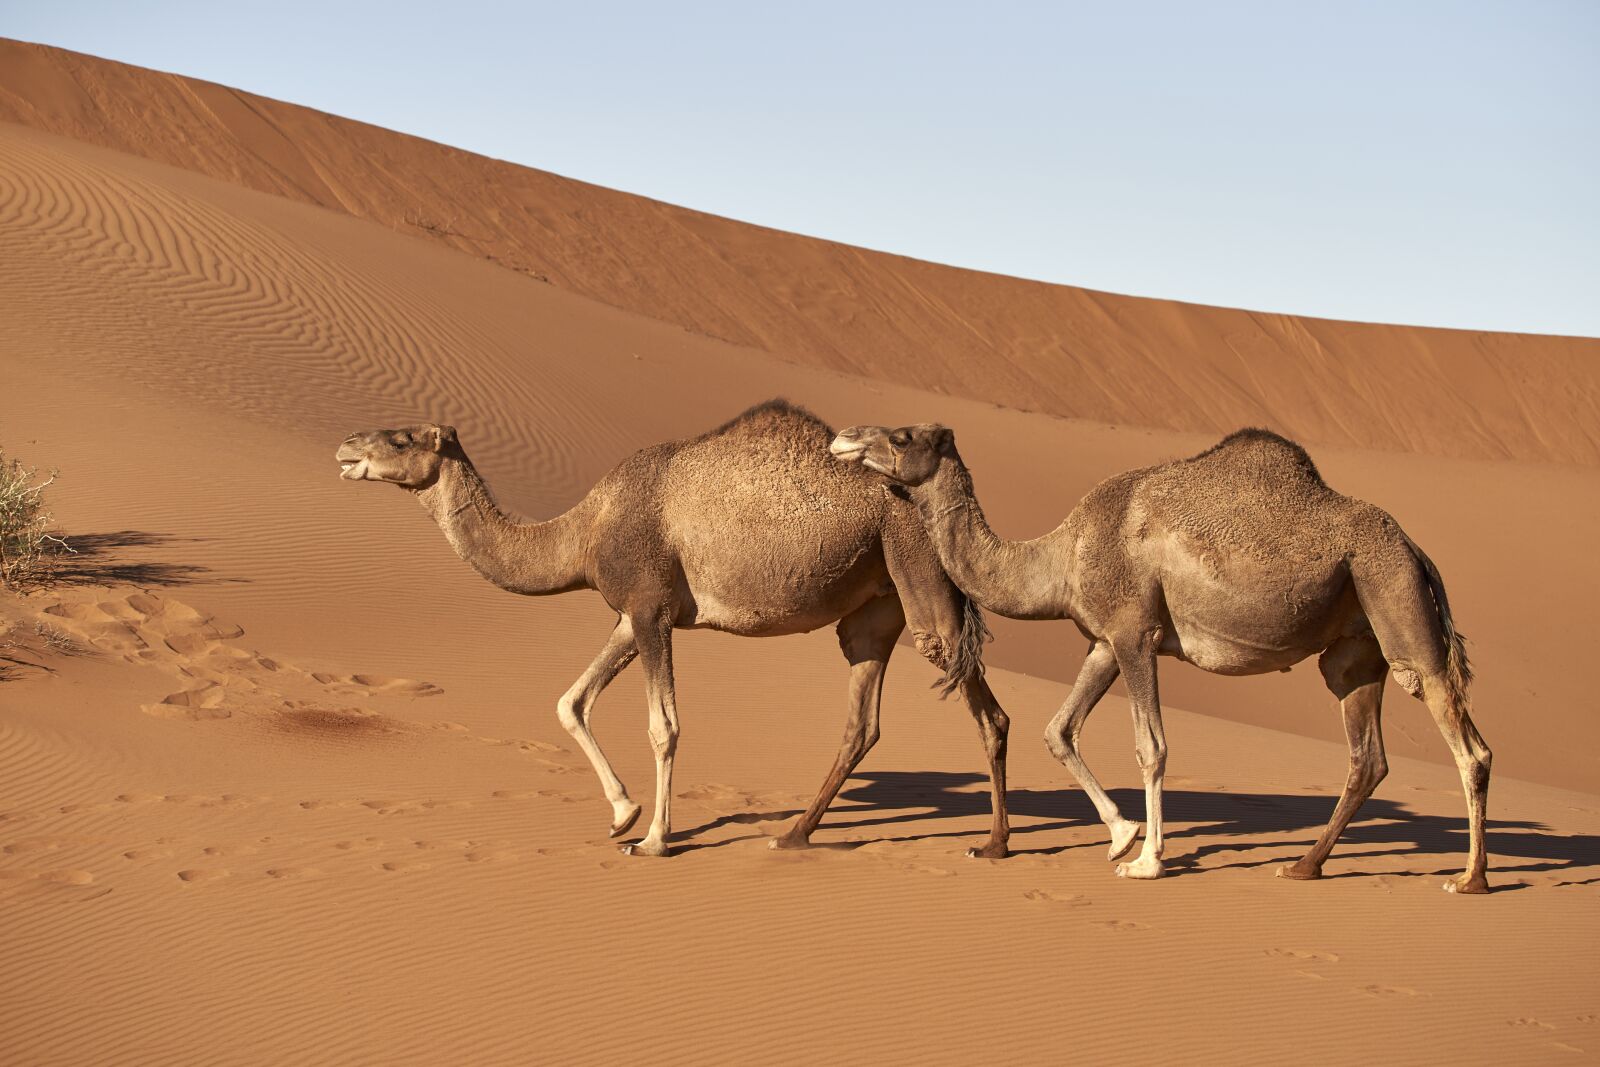 Sony a7 III + Sony FE 70-300mm F4.5-5.6 G OSS sample photo. Dromedary, camel, morocco photography